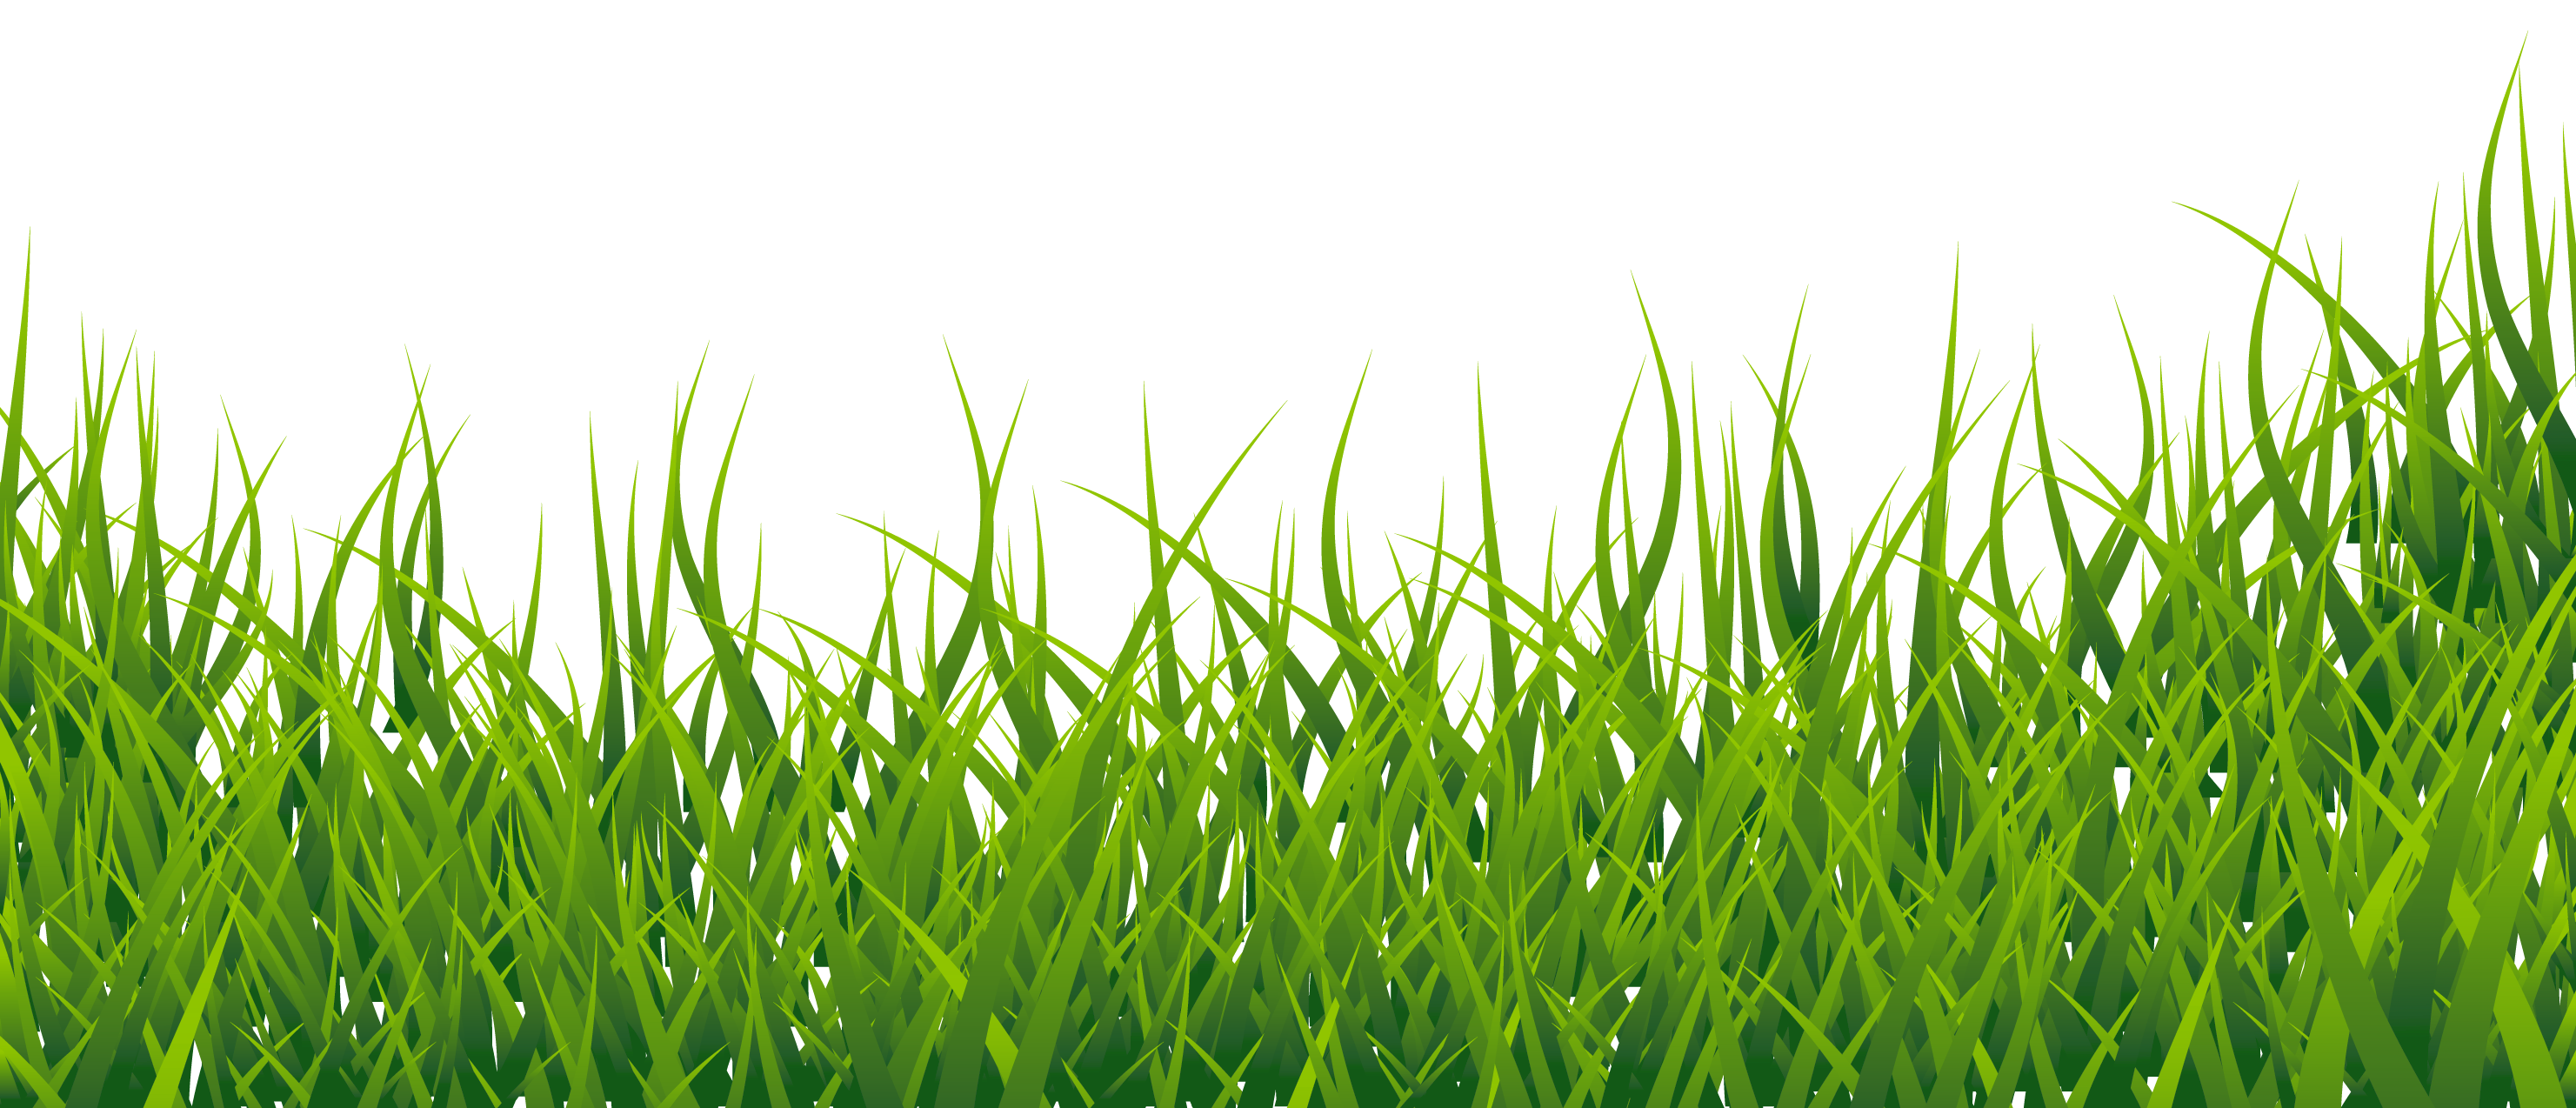 Grass clipart - Clipartix